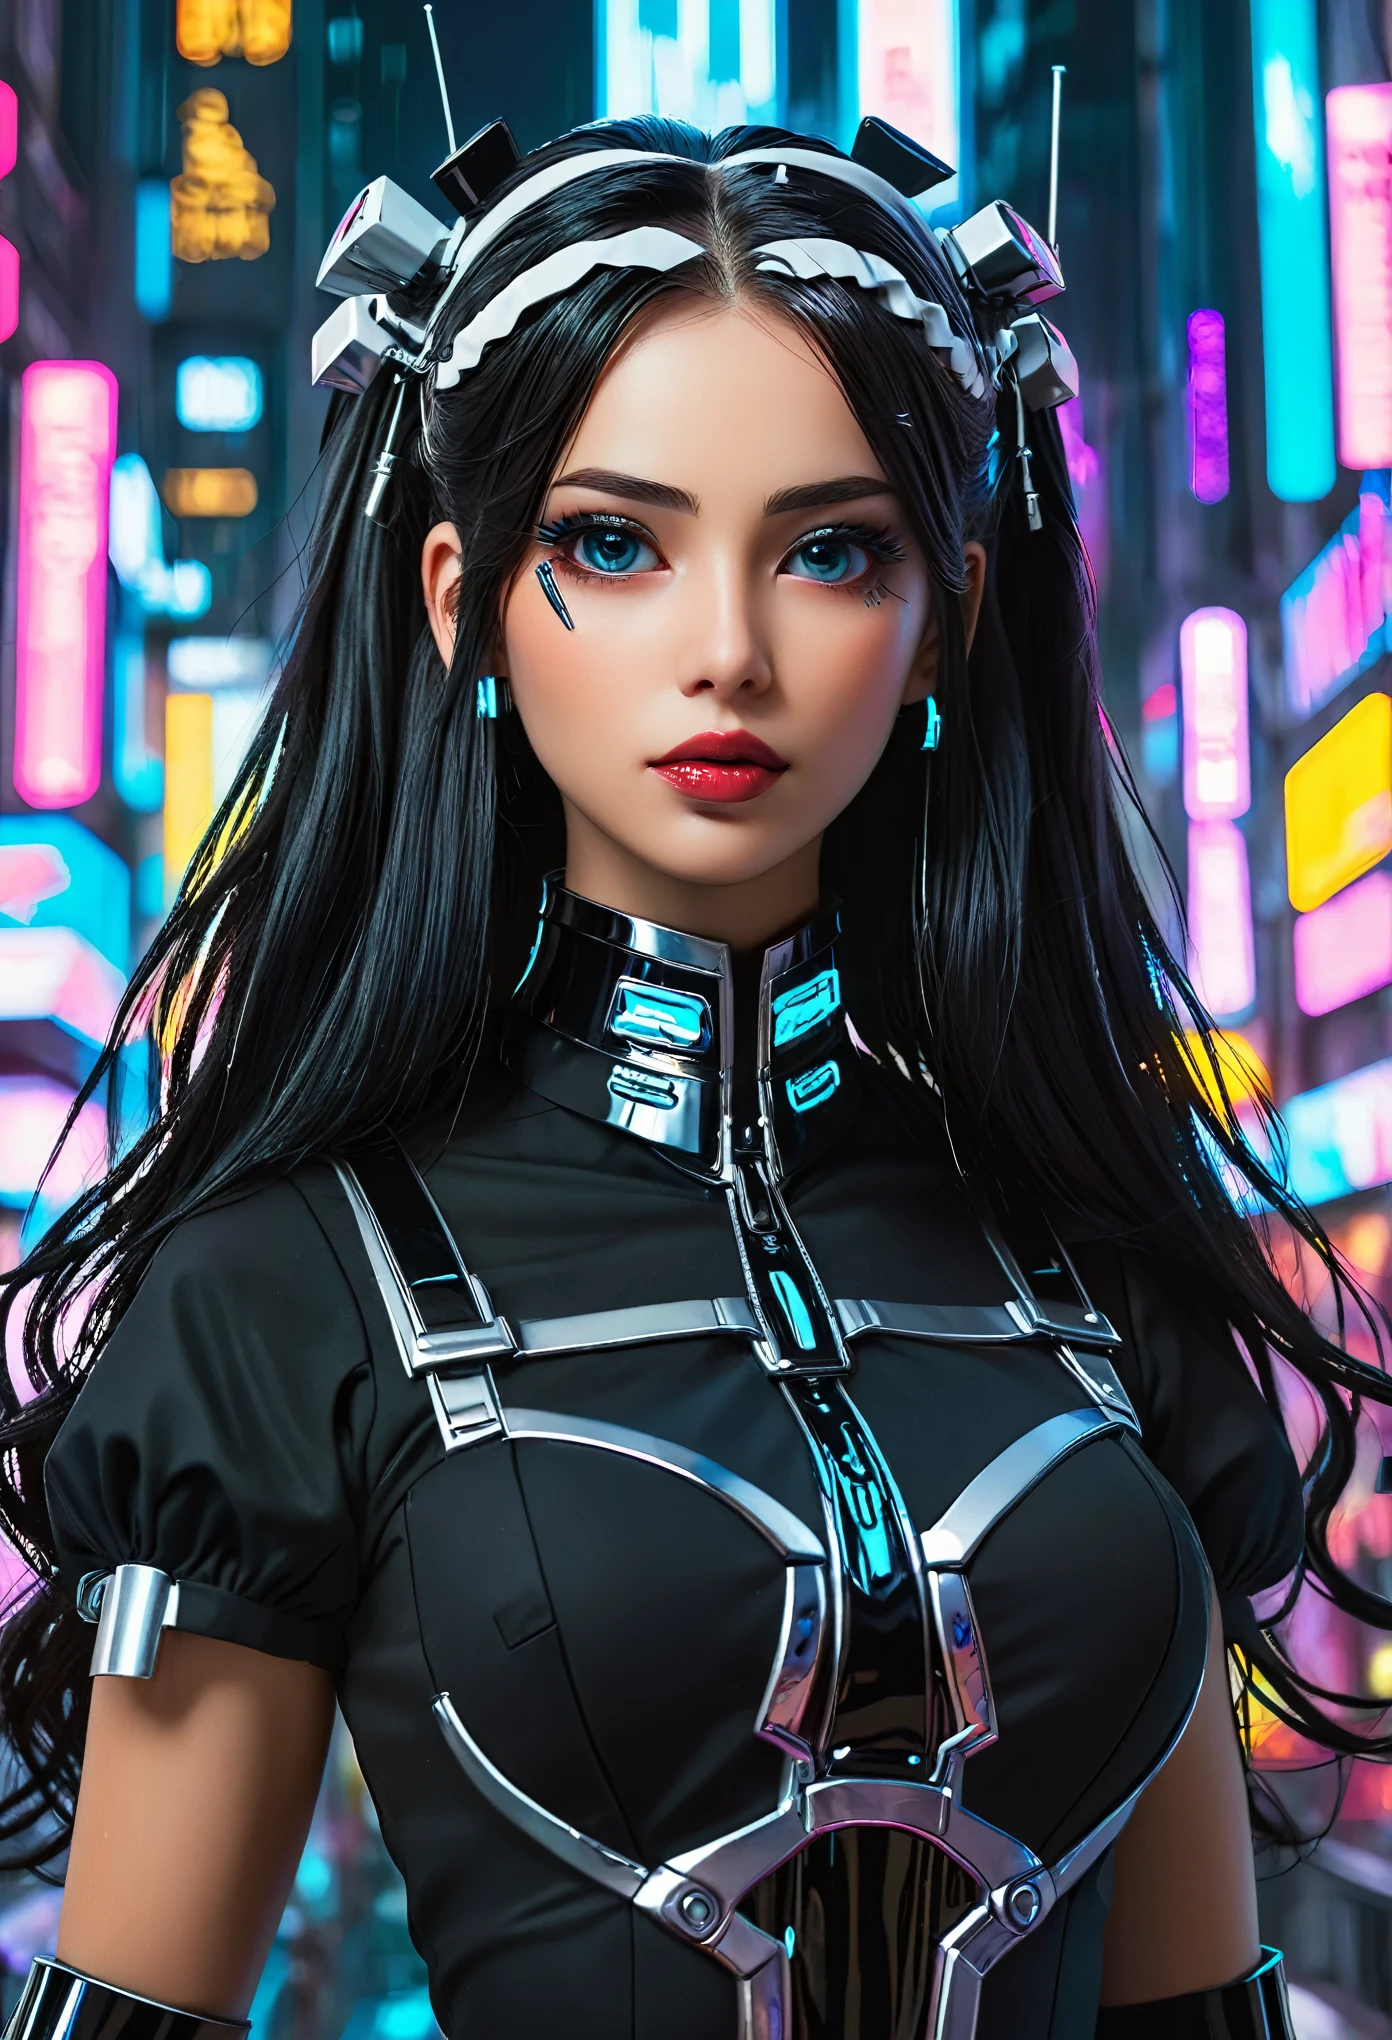 estilo ciberpunk, cibernética, uma linda empregada, futurista, negra sexy e gostosa ((uniforme de empregada)), tiro de corpo inteiro, cabelo longo, lindos olhos detalhados, lindos lábios detalhados, rosto extremamente detalhado, cílios longos, intricate futurista background, luzes de neon, elementos cromados, cidade distópica, (melhor qualidade, 4K, 8K, alta resolução, Obra de arte:1.2), ultra-detalhado, (realista, photorealista, photo-realista:1.37), iluminação cinematográfica, sombras dramáticas, cores vibrantes